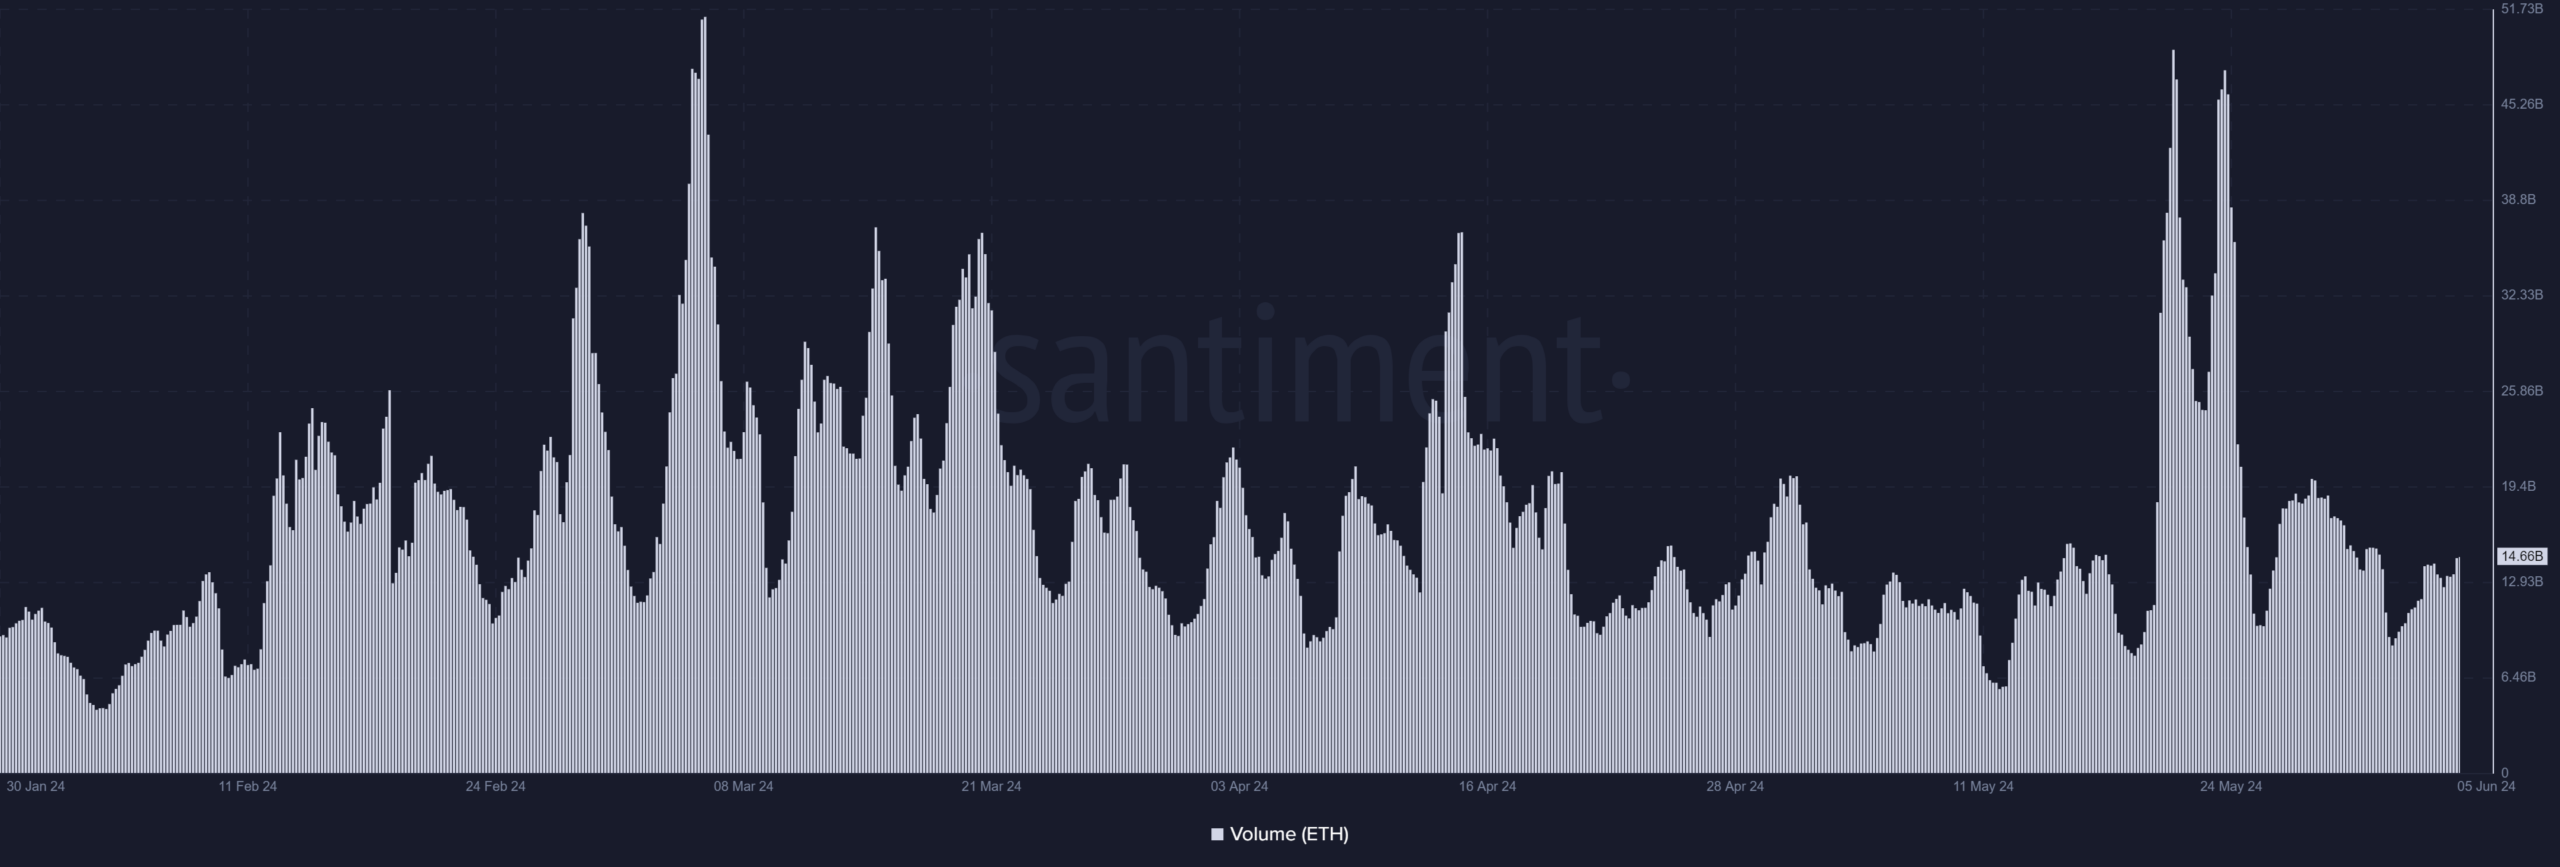 Ethereum volume trend